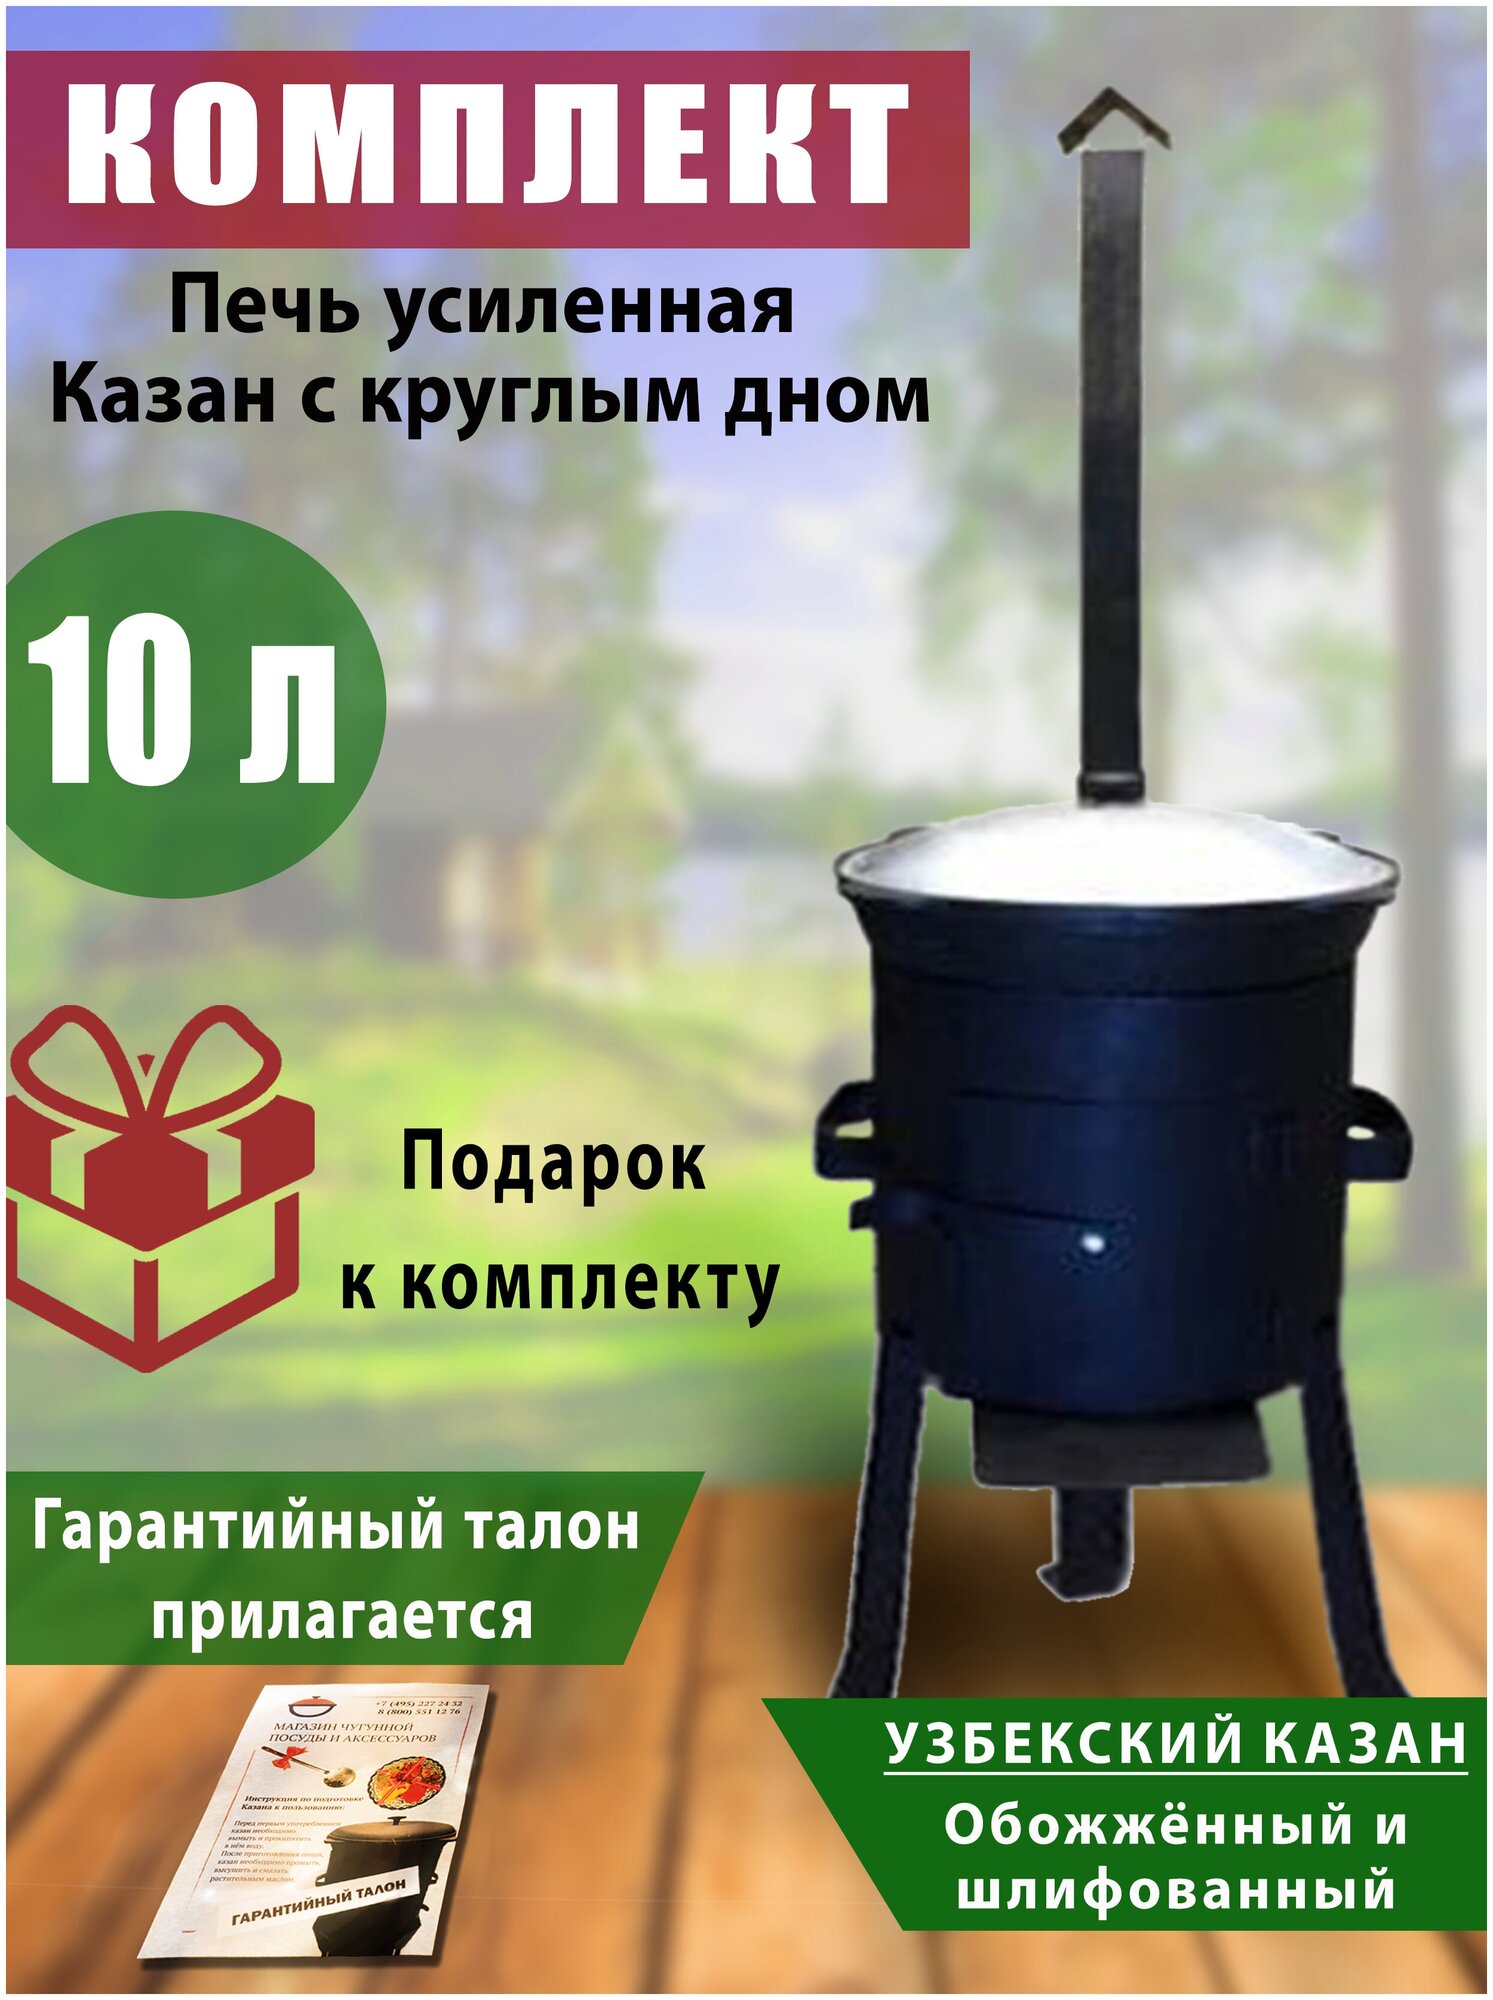 Комплект: казан узбекский, чугунный, обоженный, шлифованный, объем 10 литров, круглое дно, крышка литая (алюминий) и печь с трубой усиленная.